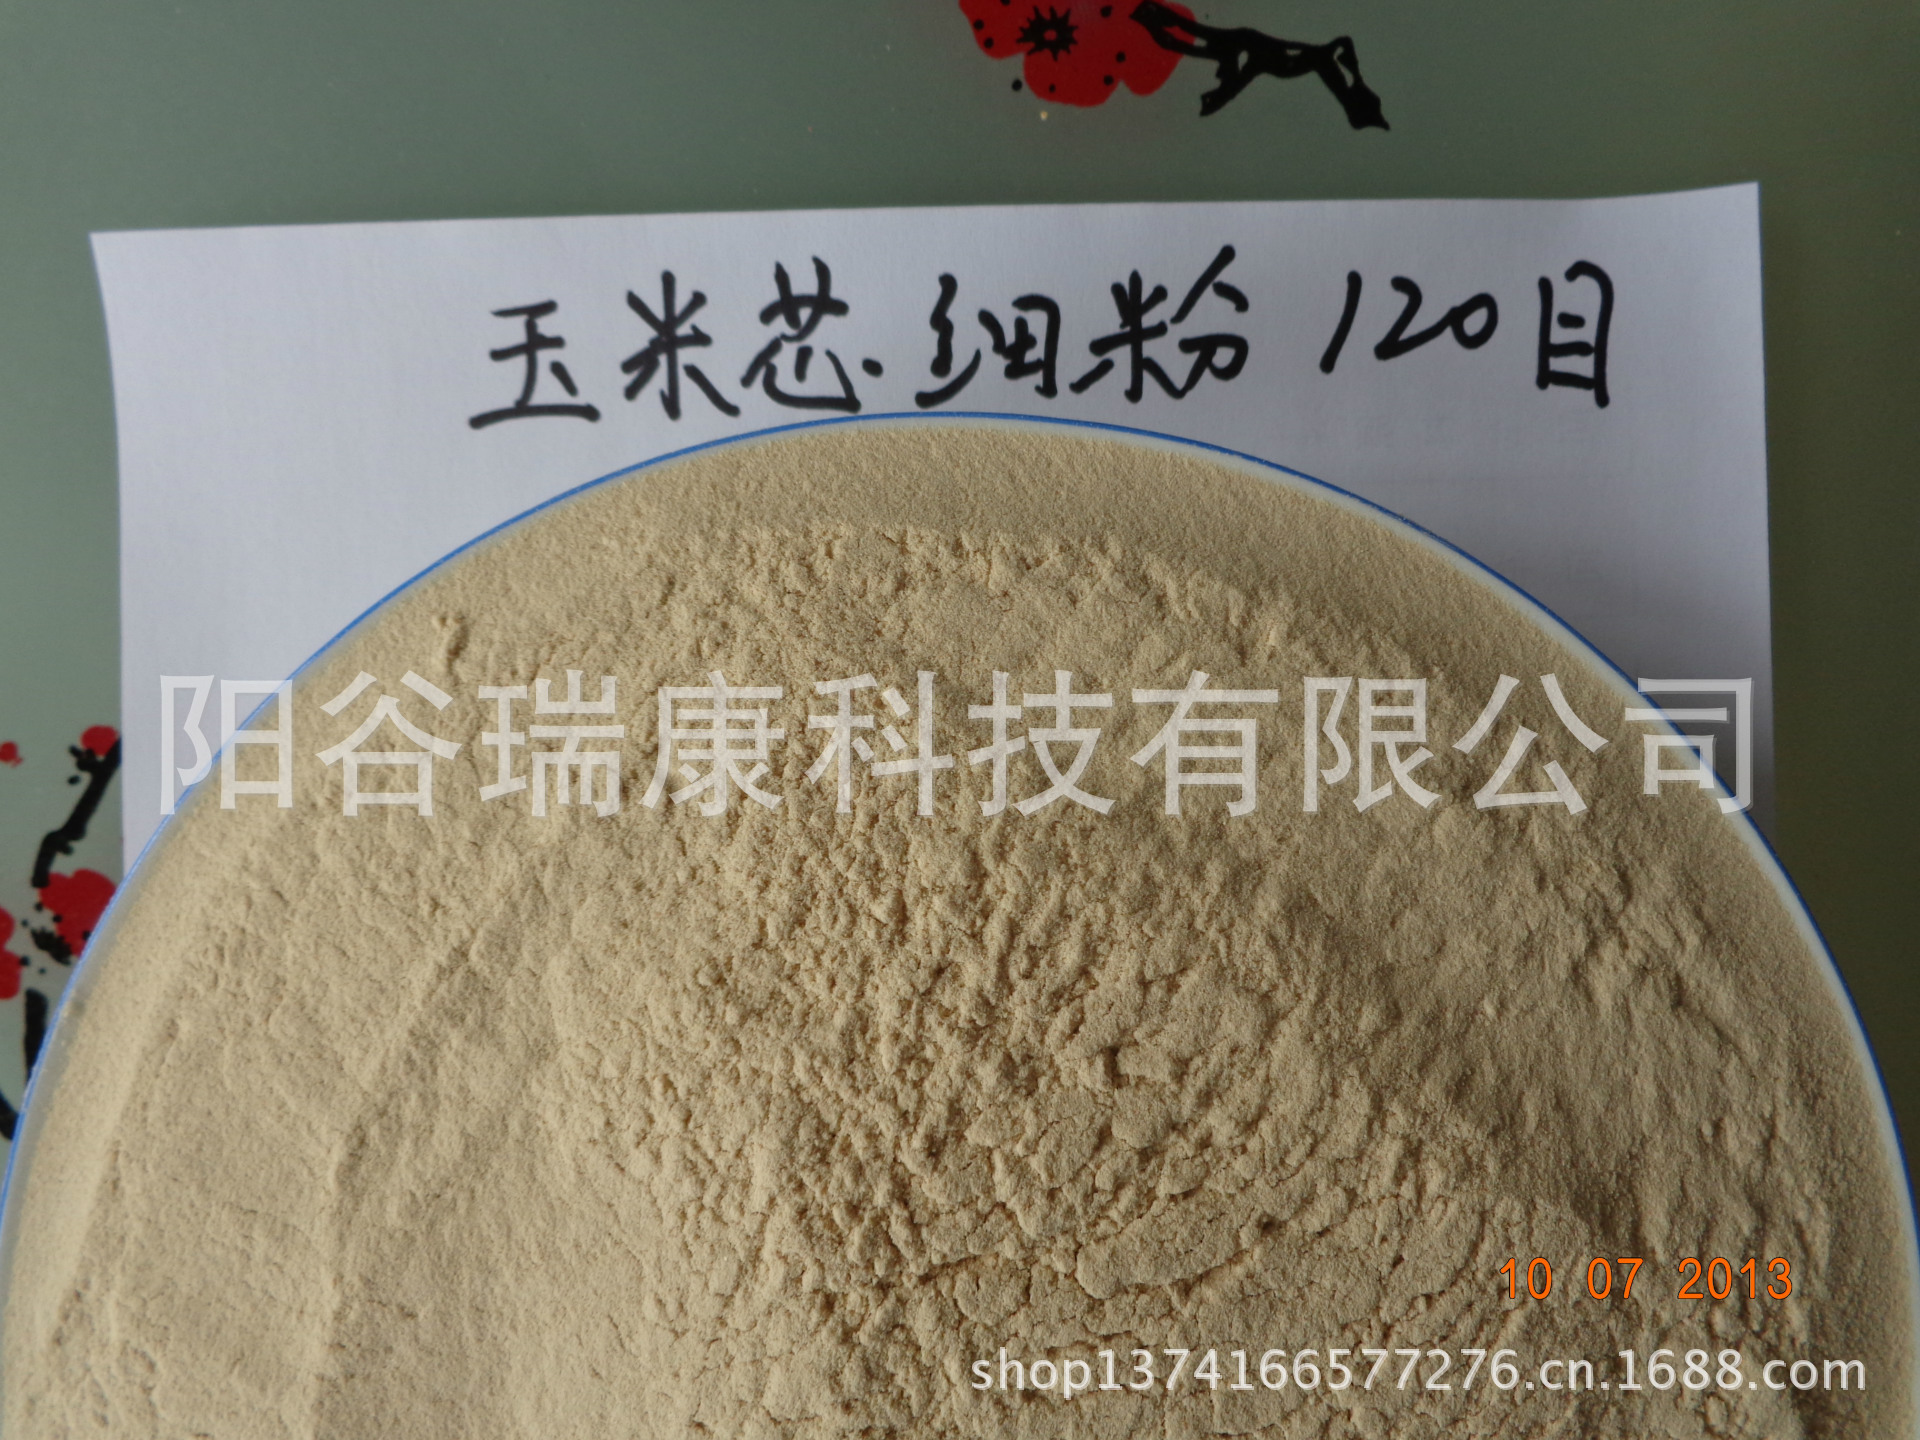 厂家专业生产加工各类规格的玉米芯细粉示例图4